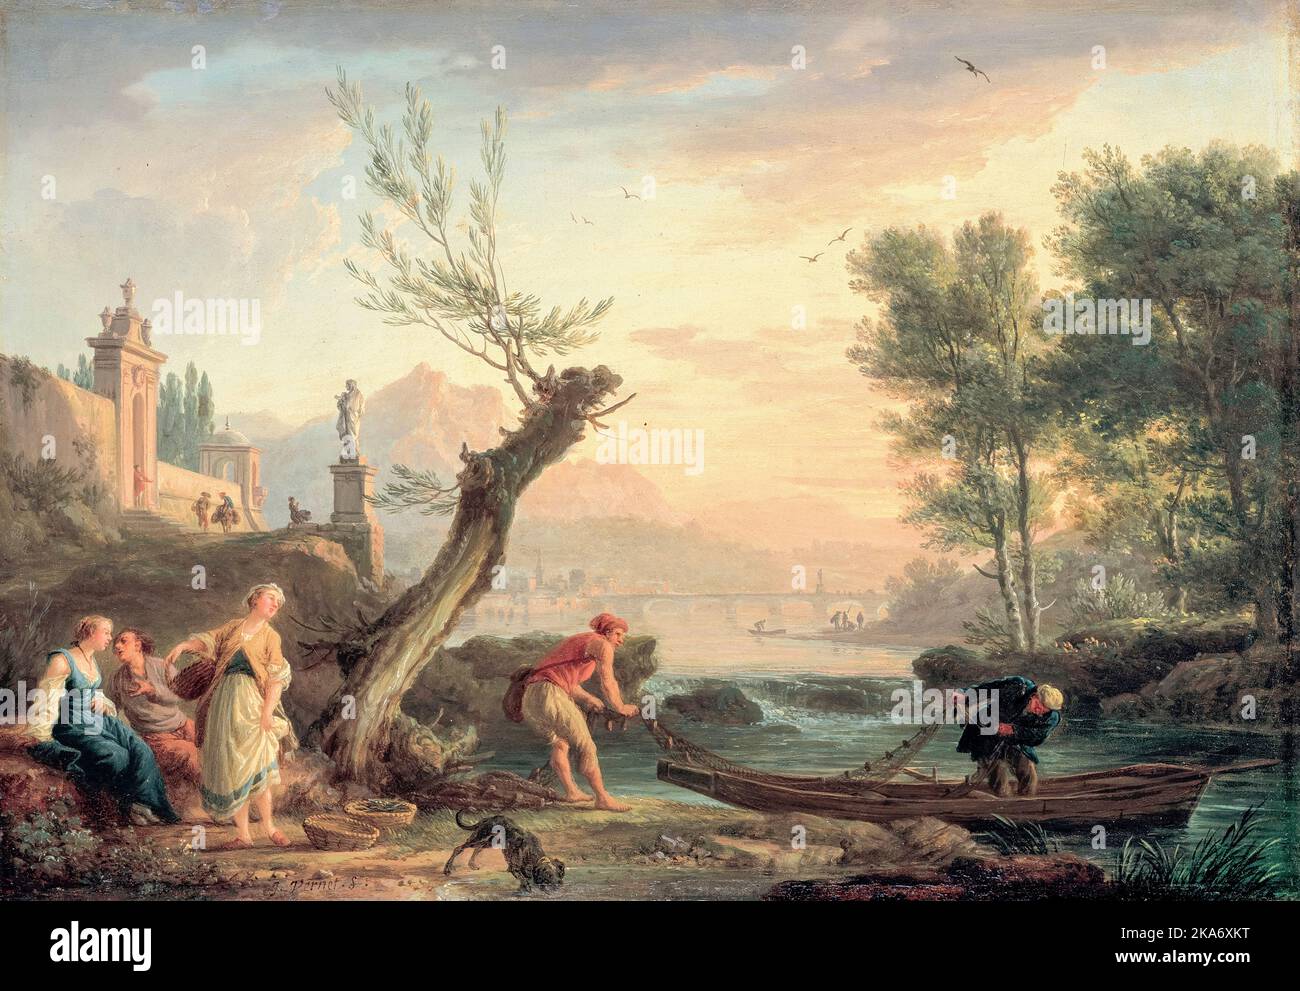 Claude Joseph Vernet, pêcheurs de rivière en soirée, peinture à l'huile sur cuivre, vers 1755 Banque D'Images